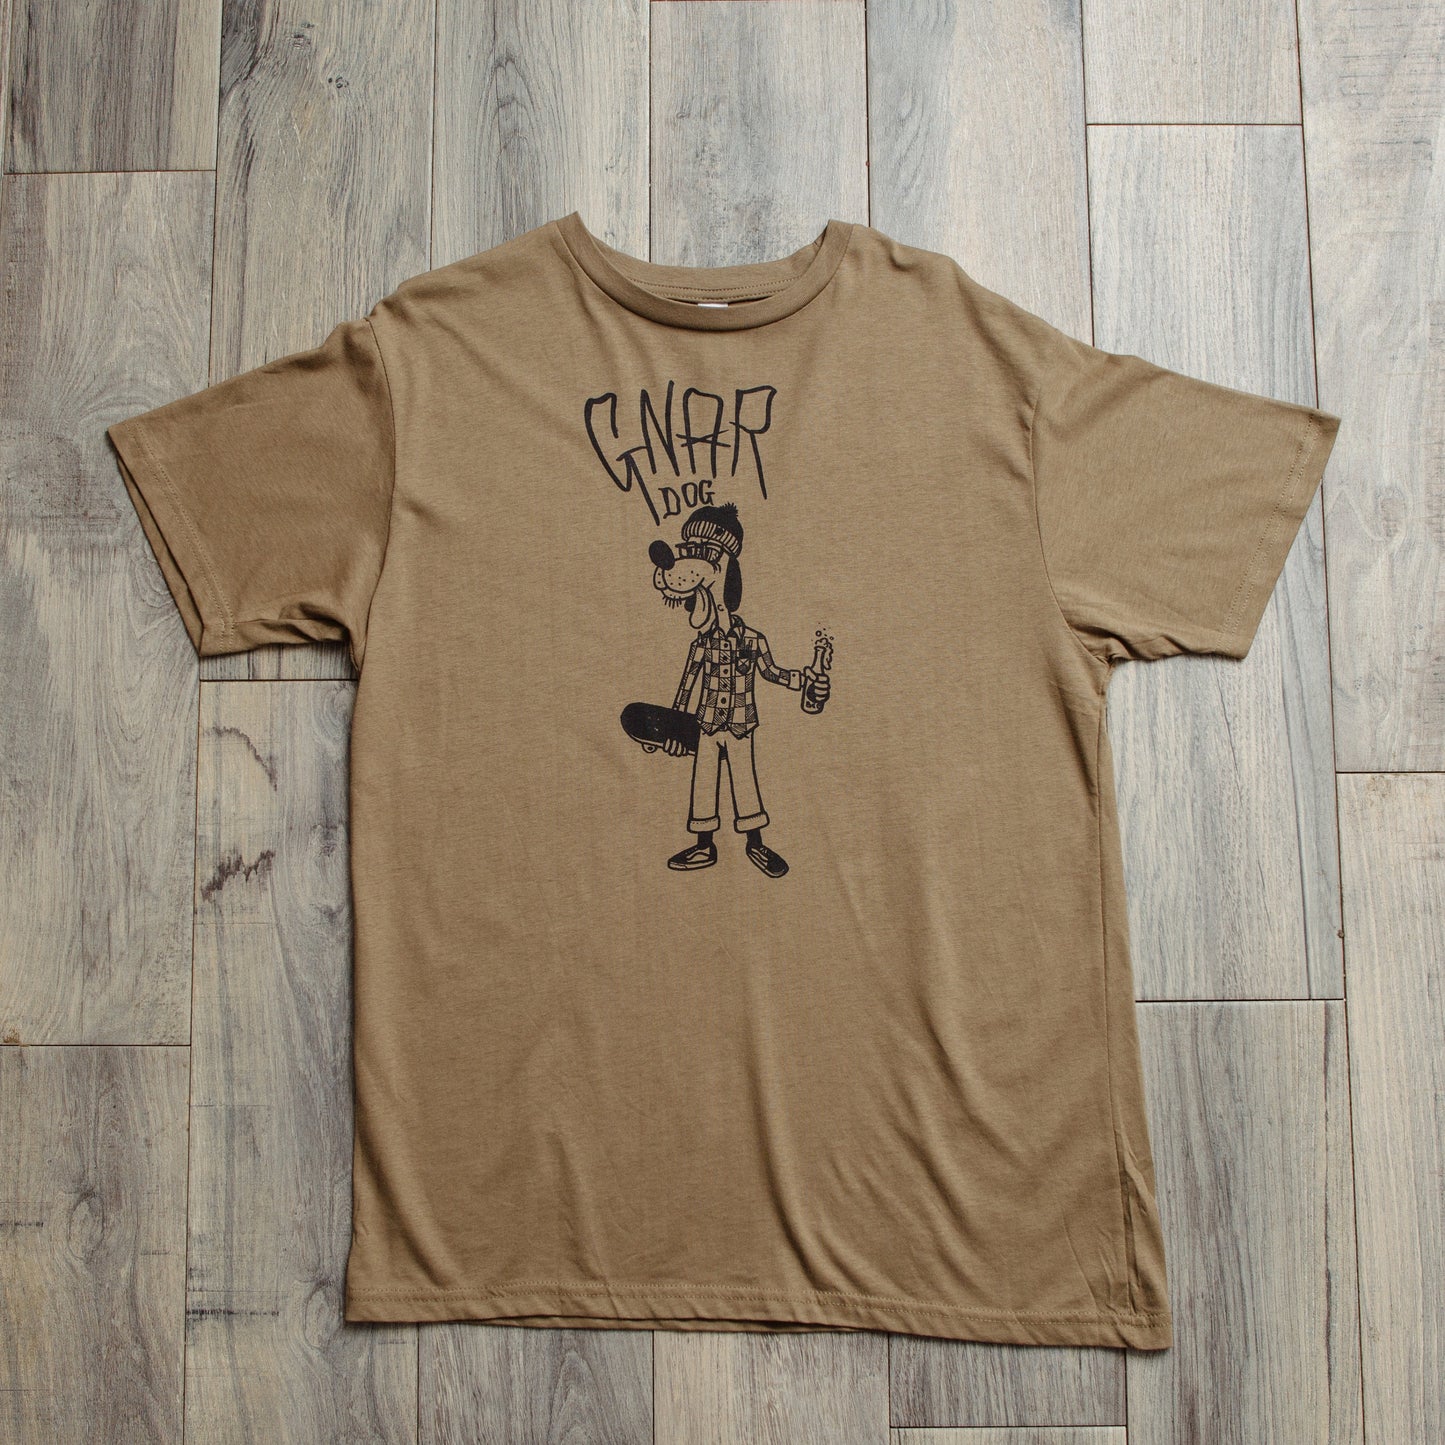 Gnar Dog T-Shirt.